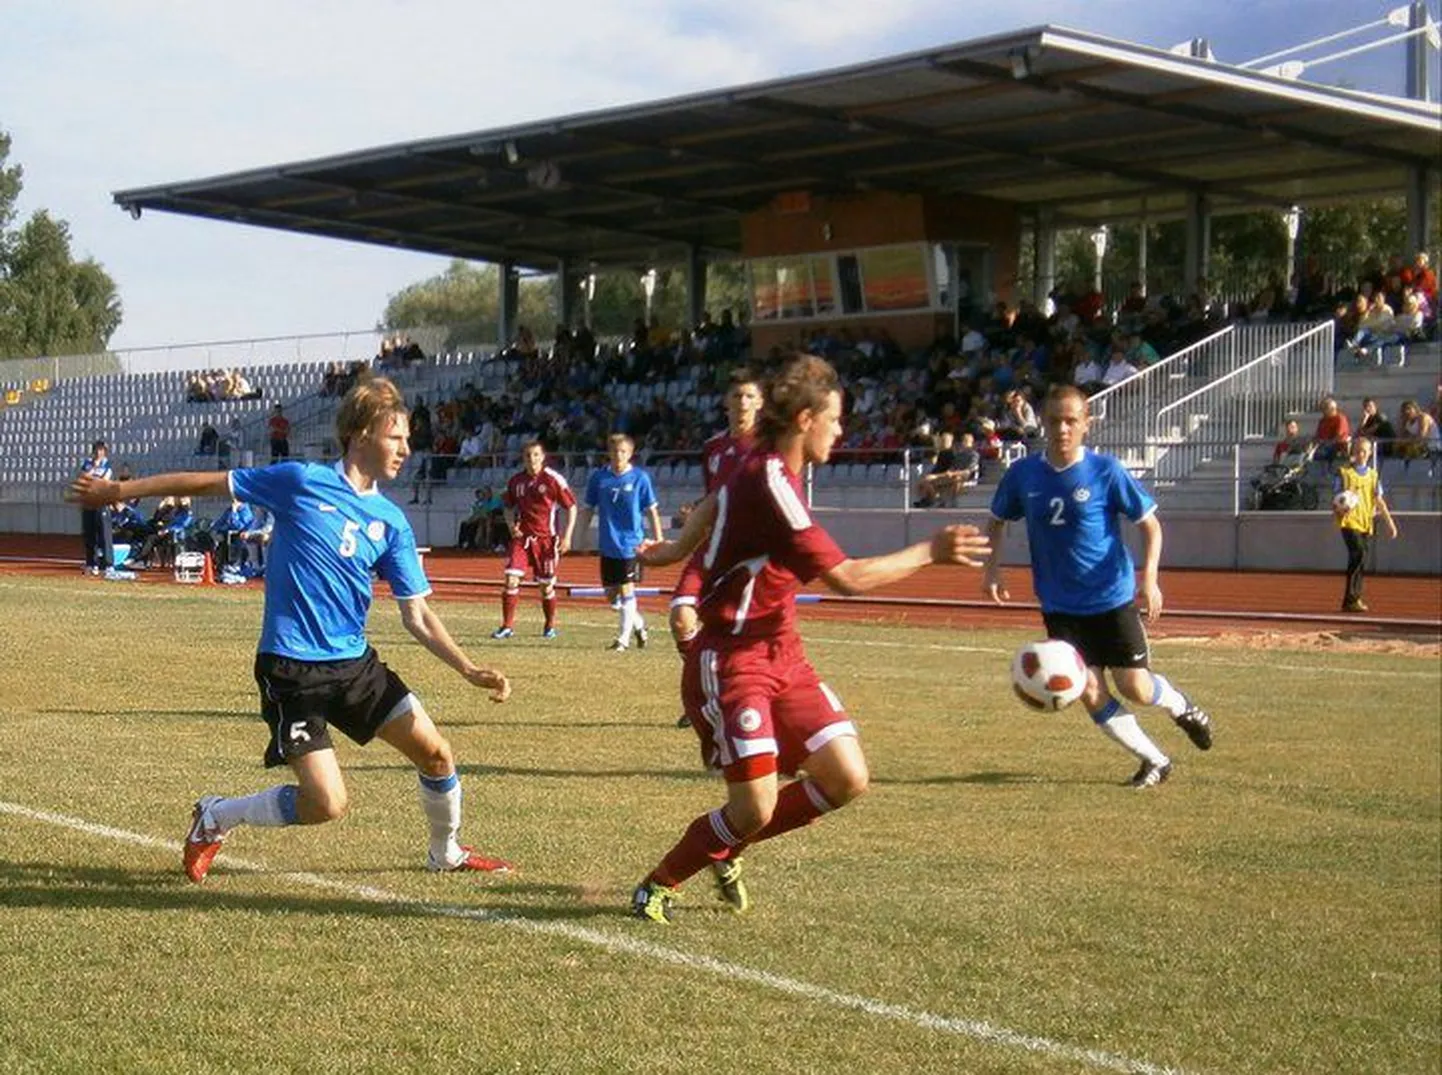 Eesti U19 koondis.